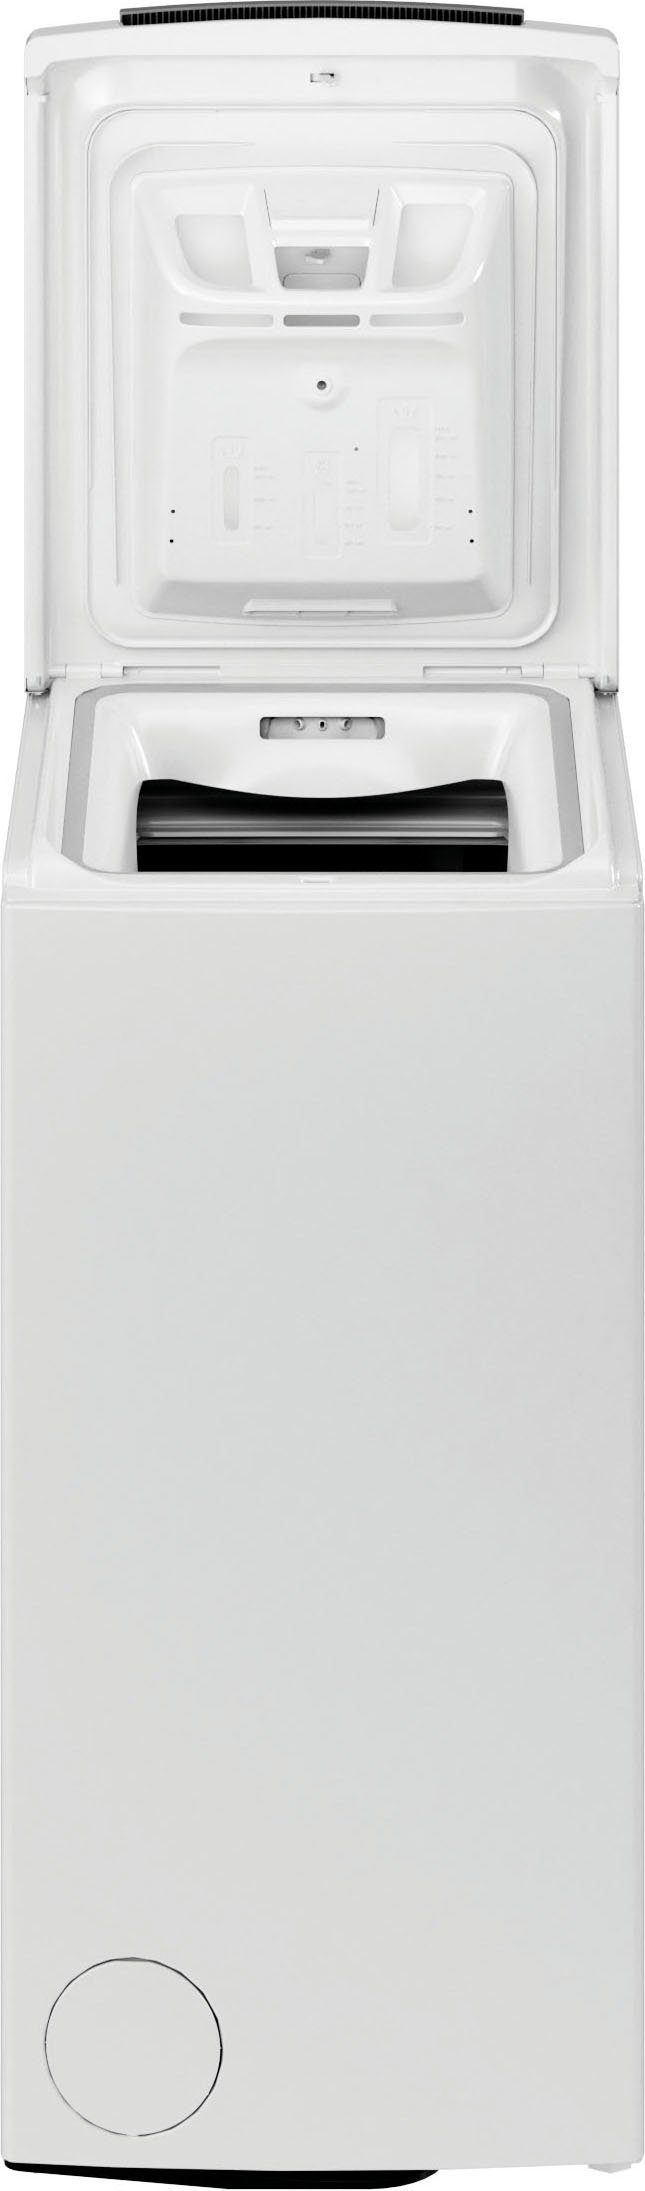 BAUKNECHT Waschmaschine Toplader 6 1200 6513 kg, WMT U/min B5